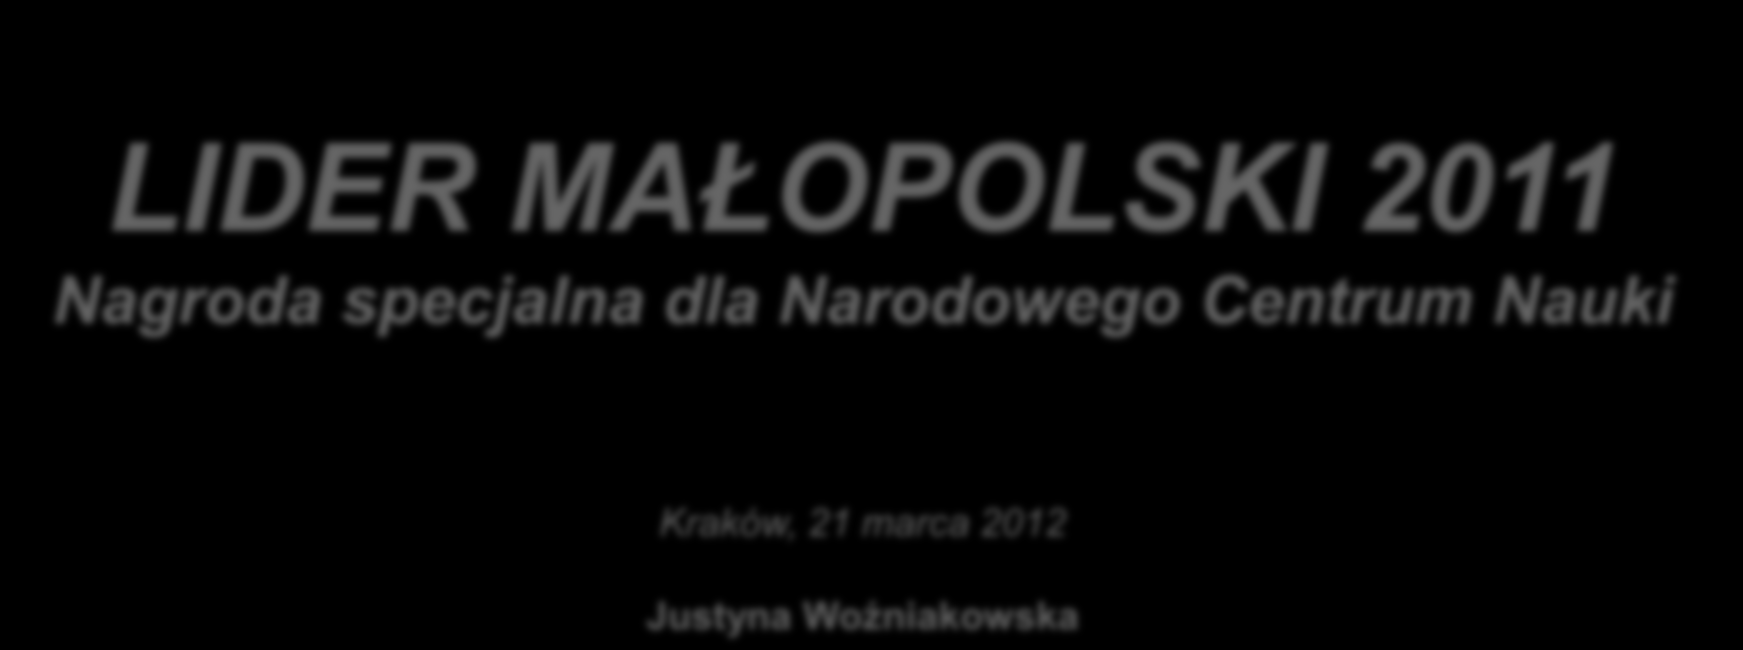 LIDER MAŁOPOLSKI 2011 Nagroda specjalna dla Narodowego